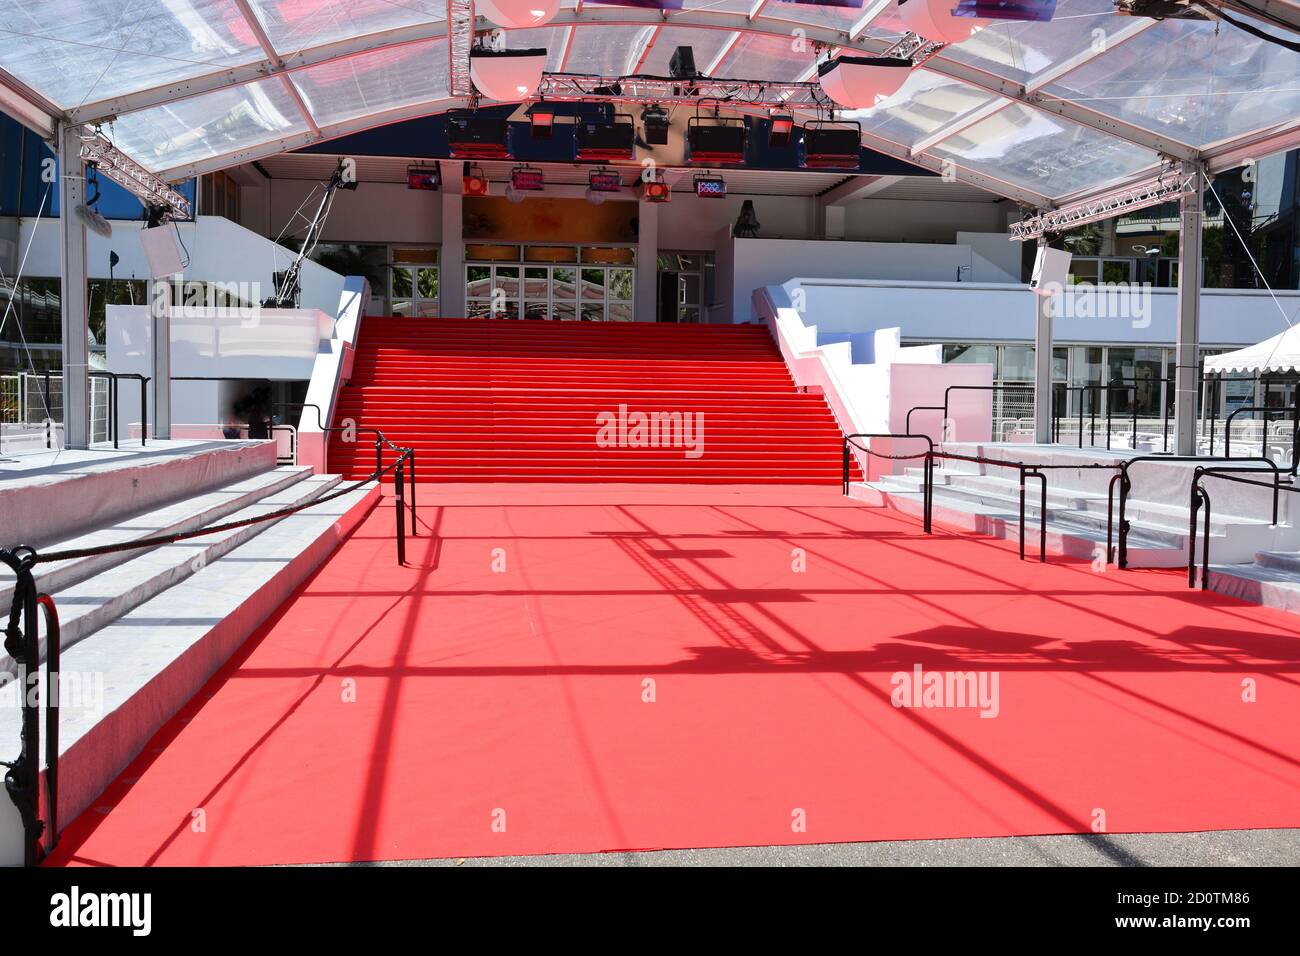 Francia, costa azzurra, Cannes, il famoso tappeto rosso del Festival Palace per il Festival Internazionale del Cinema premiato dalla palma d'oro. Foto Stock